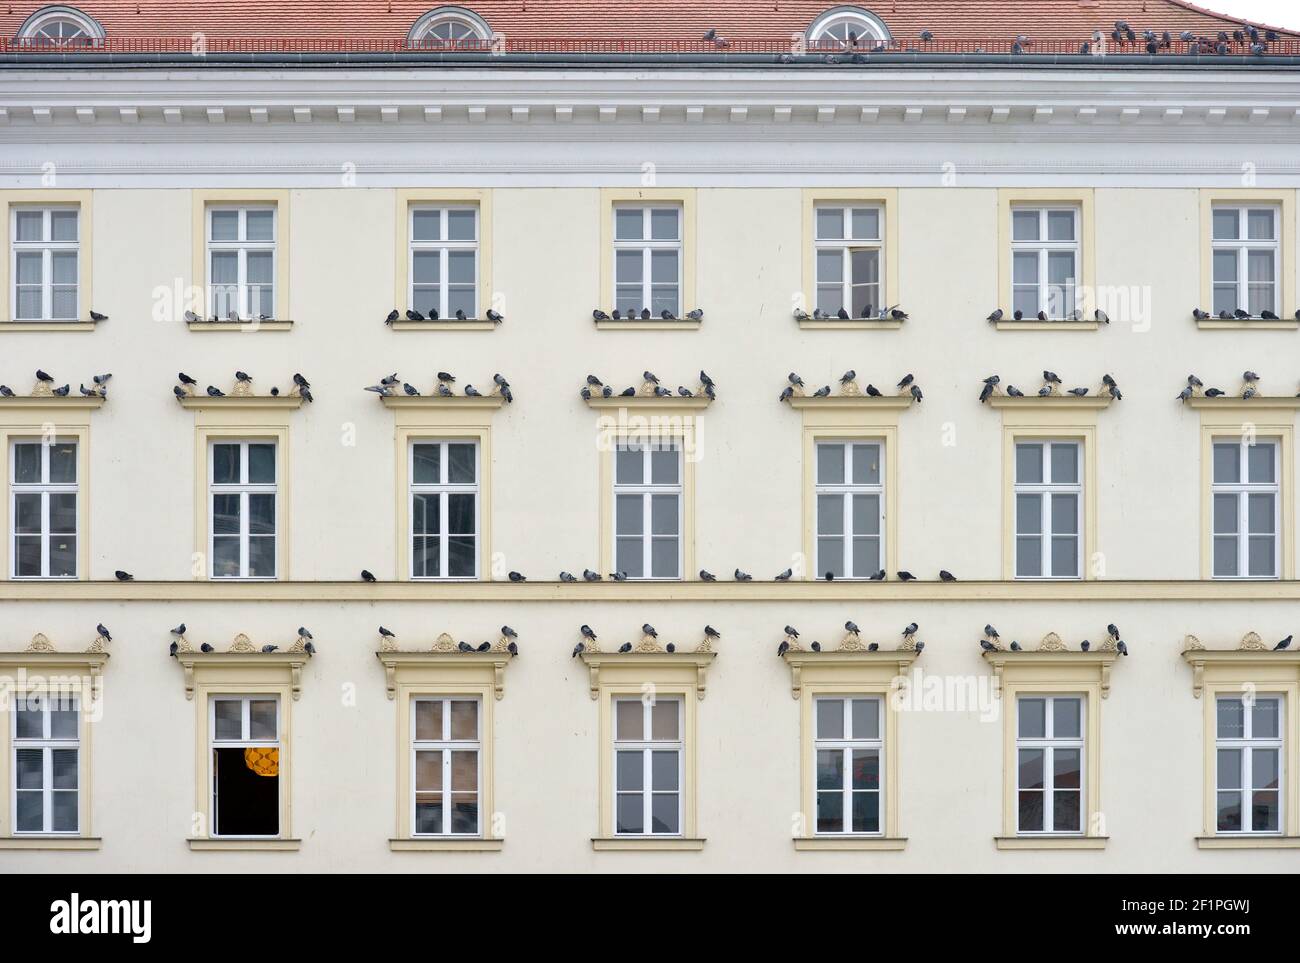 06 de febrero de 2021, Sajonia, Leipzig: Las palomas de la ciudad se sientan en las ventanas de un edificio histórico en el Brühl en Leipzig. Foto: Volkmar Heinz/dpa-Zentralbild/ZB Foto de stock